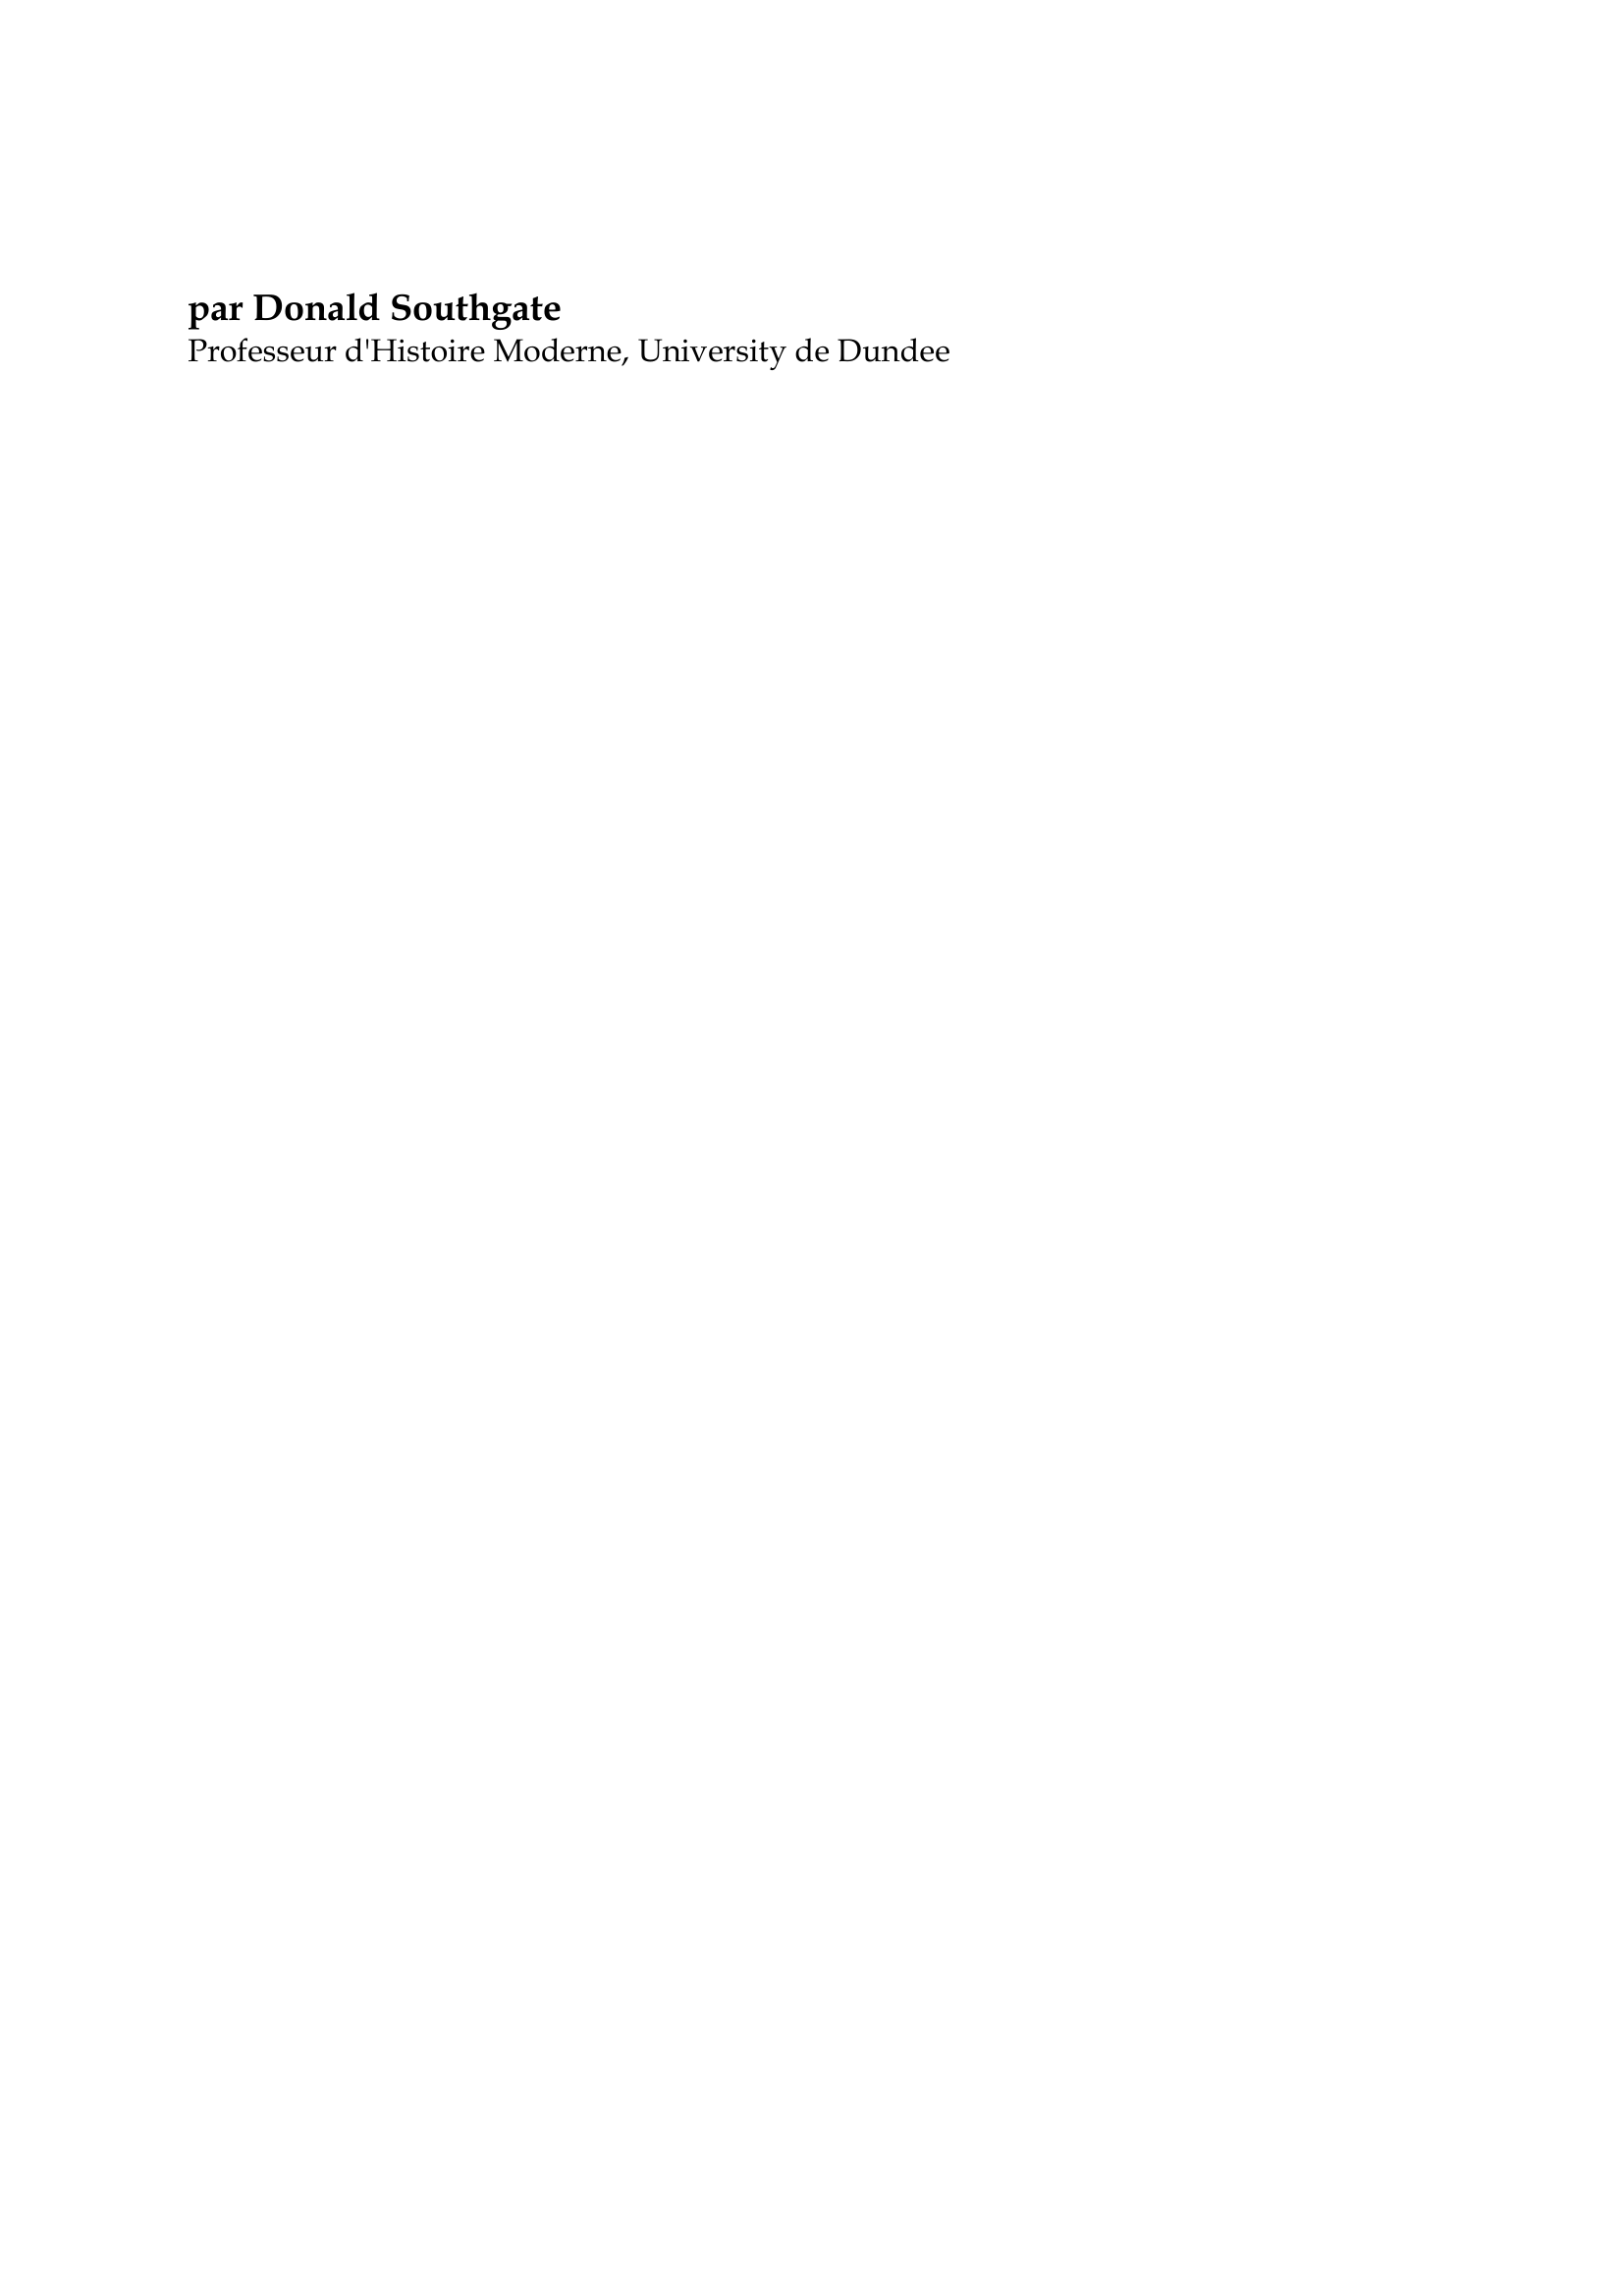 Prévisualisation du document Henri Temple Palmerston

par Donald Southgate
Professeur d'Histoire Moderne, University de Dundee

Henry